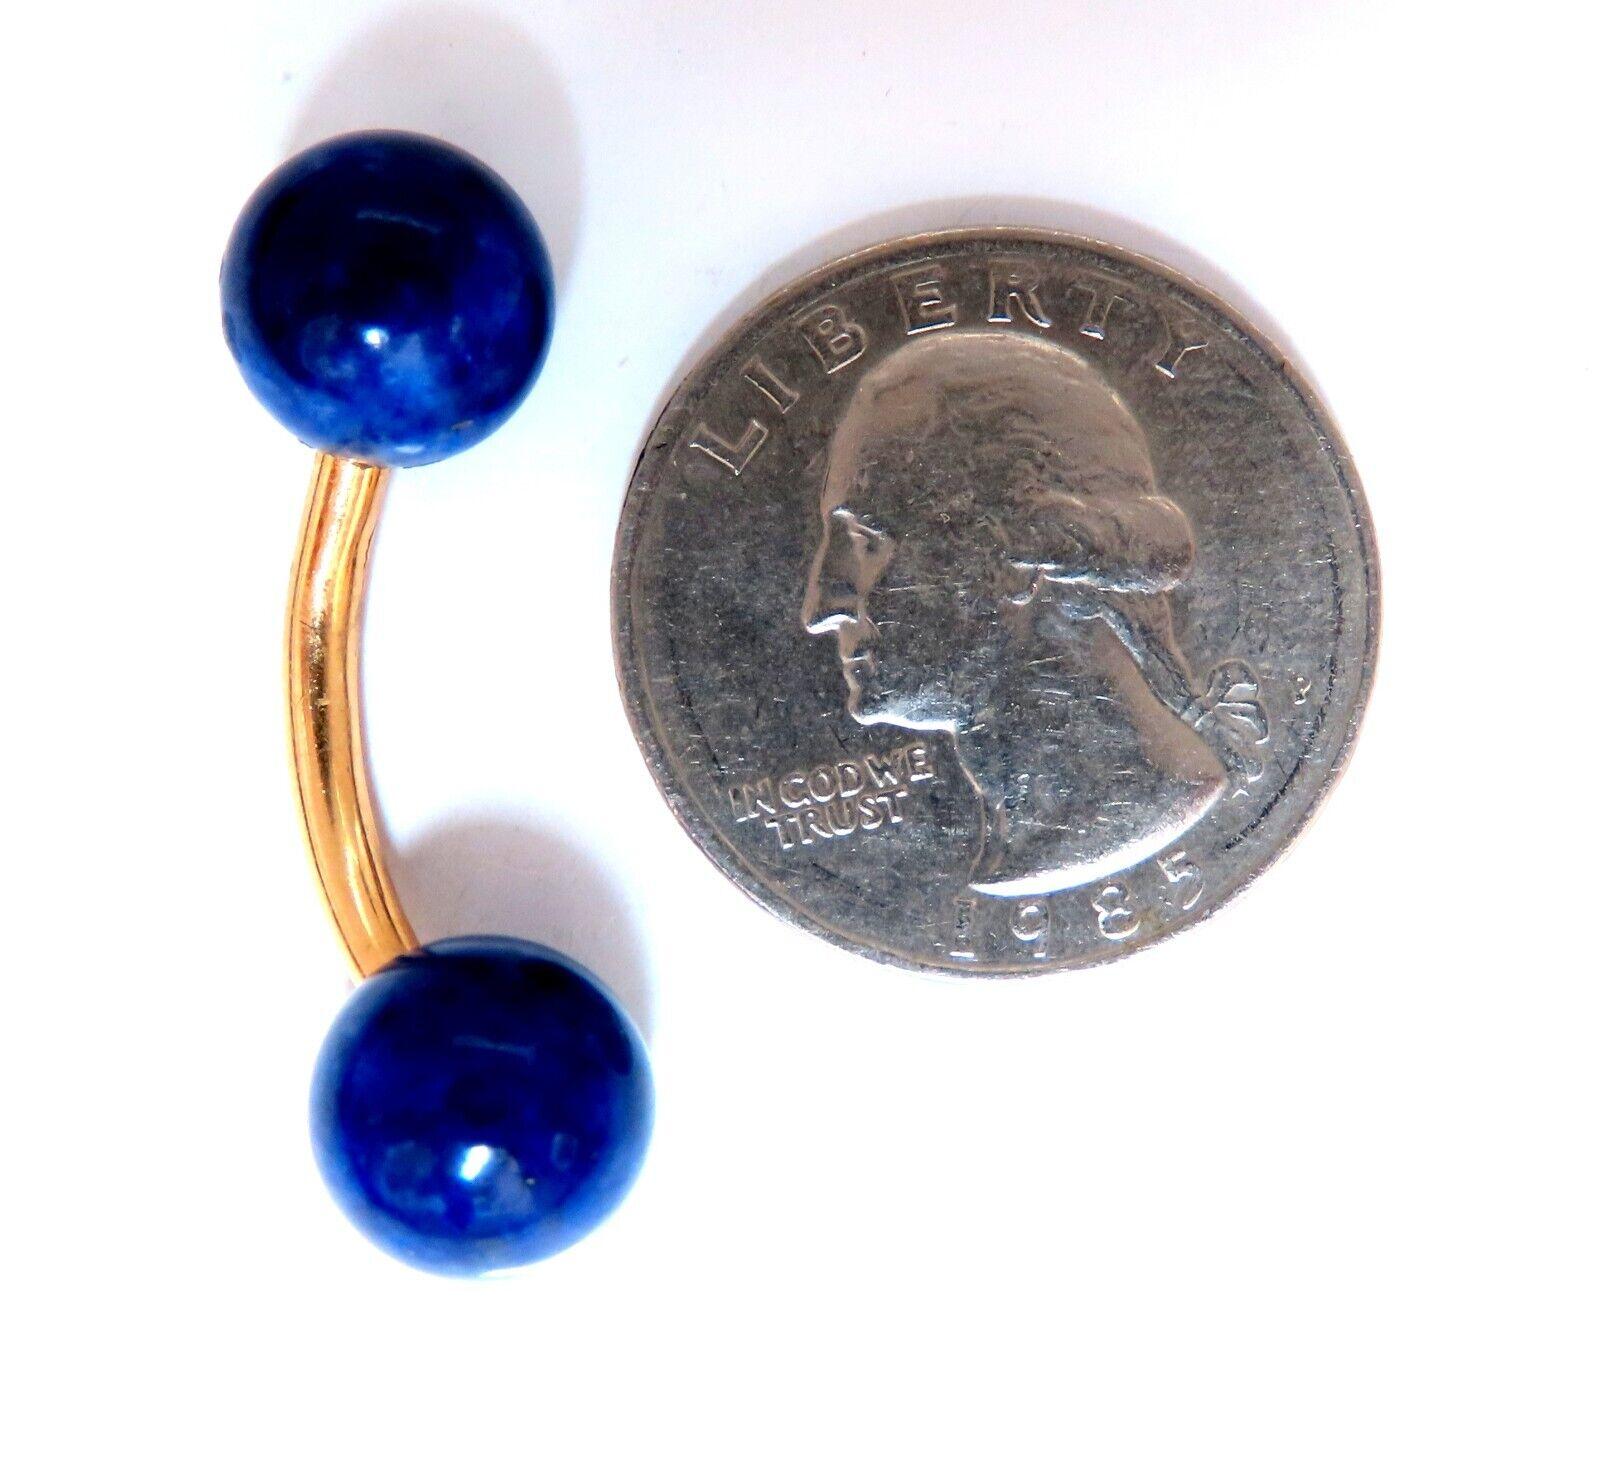 10mm natural lapis lazuli cufflinks

14kt yellow gold

7.8 grams